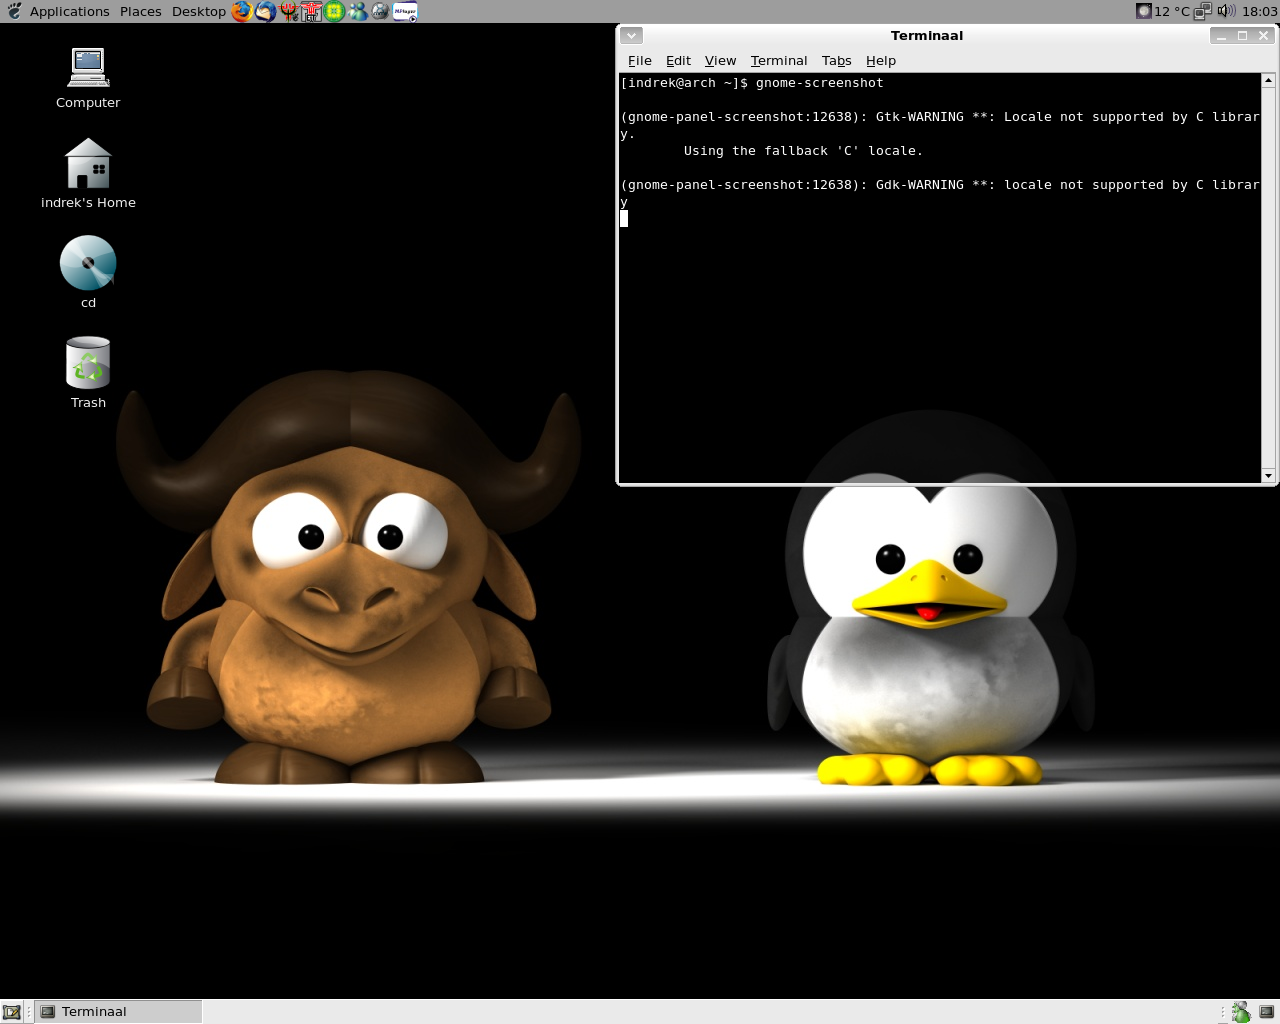 Minu Arch Linuxi desktop